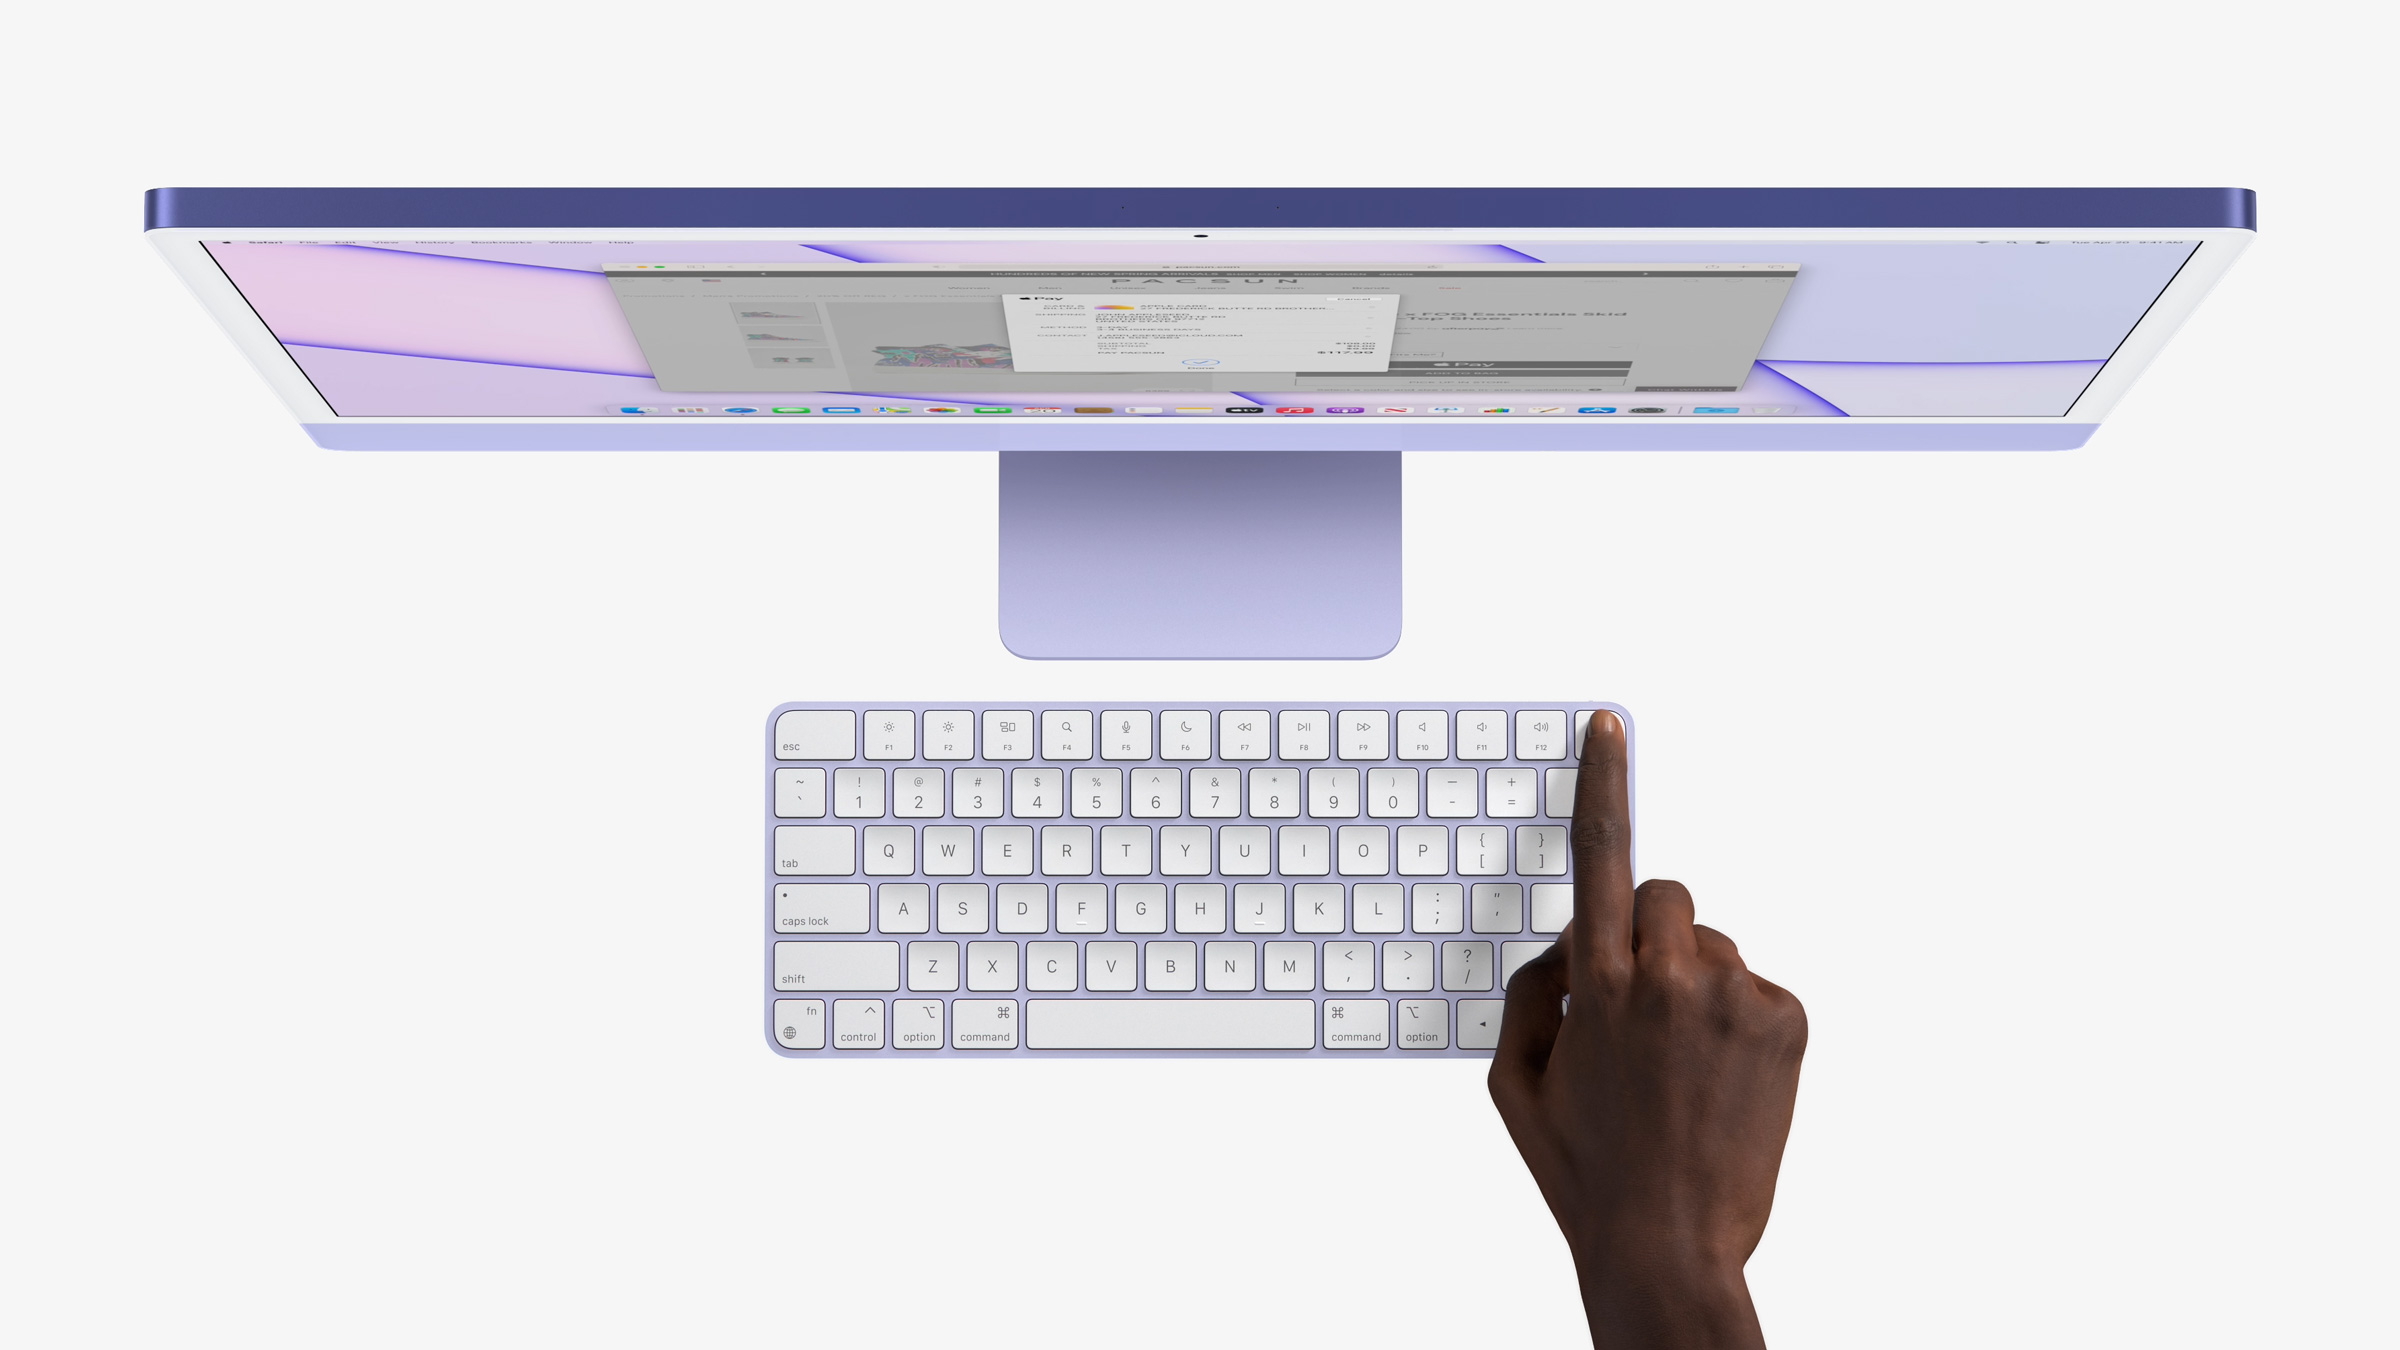 2021 全新 iMac 發布！以為只是台超薄螢幕但卻是超強電腦 | Apple M1, iMac, Pro Display XDR, Touch ID | iPhone News 愛瘋了